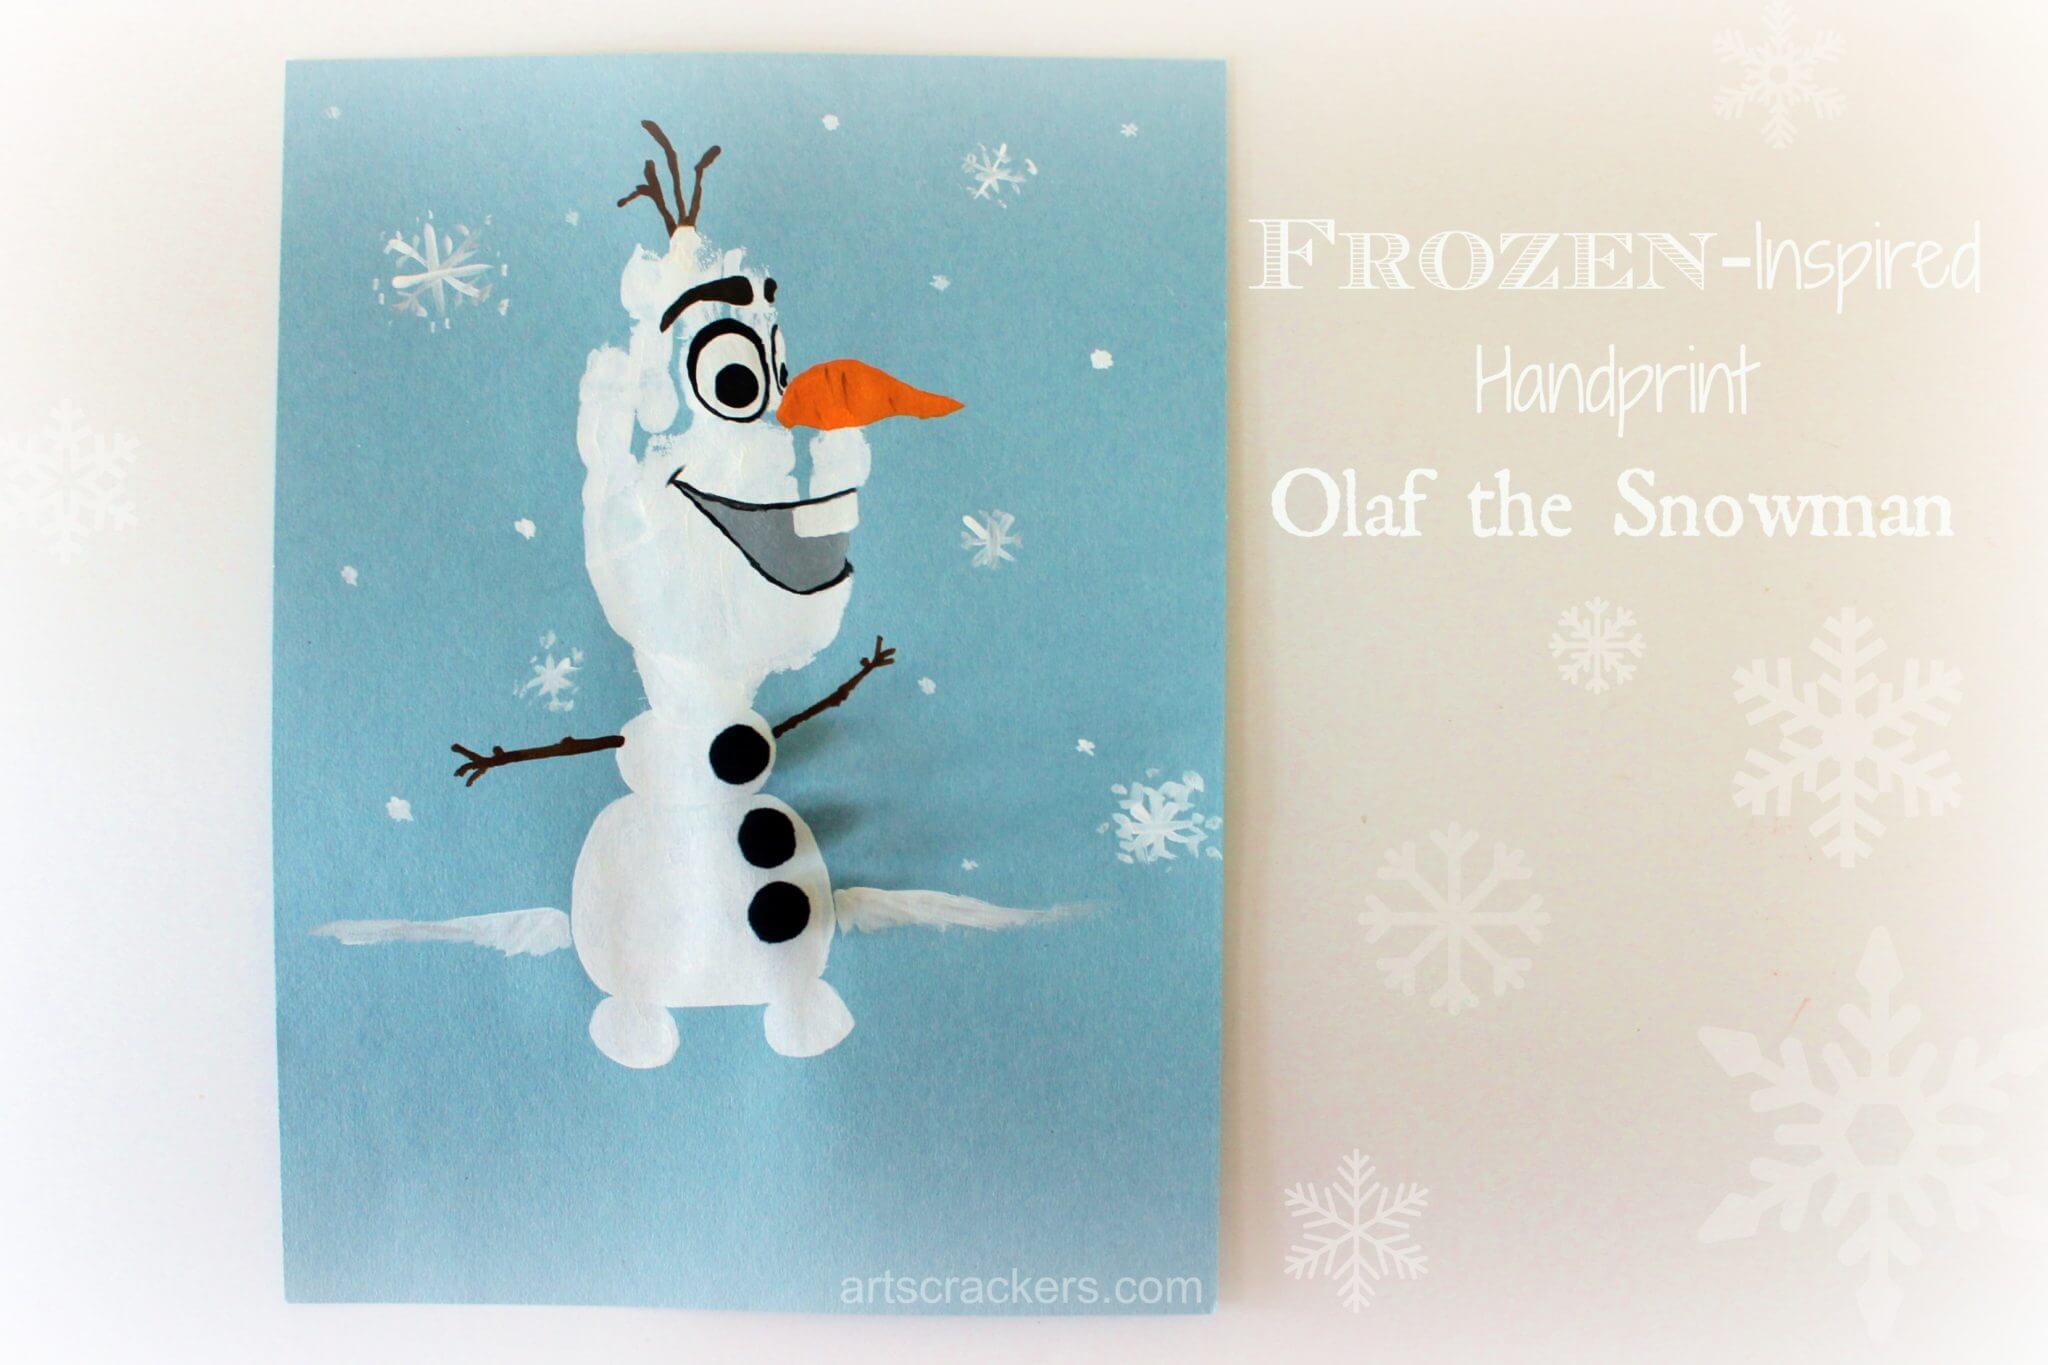 Olaf Themed Handprint Art Idea For Kids